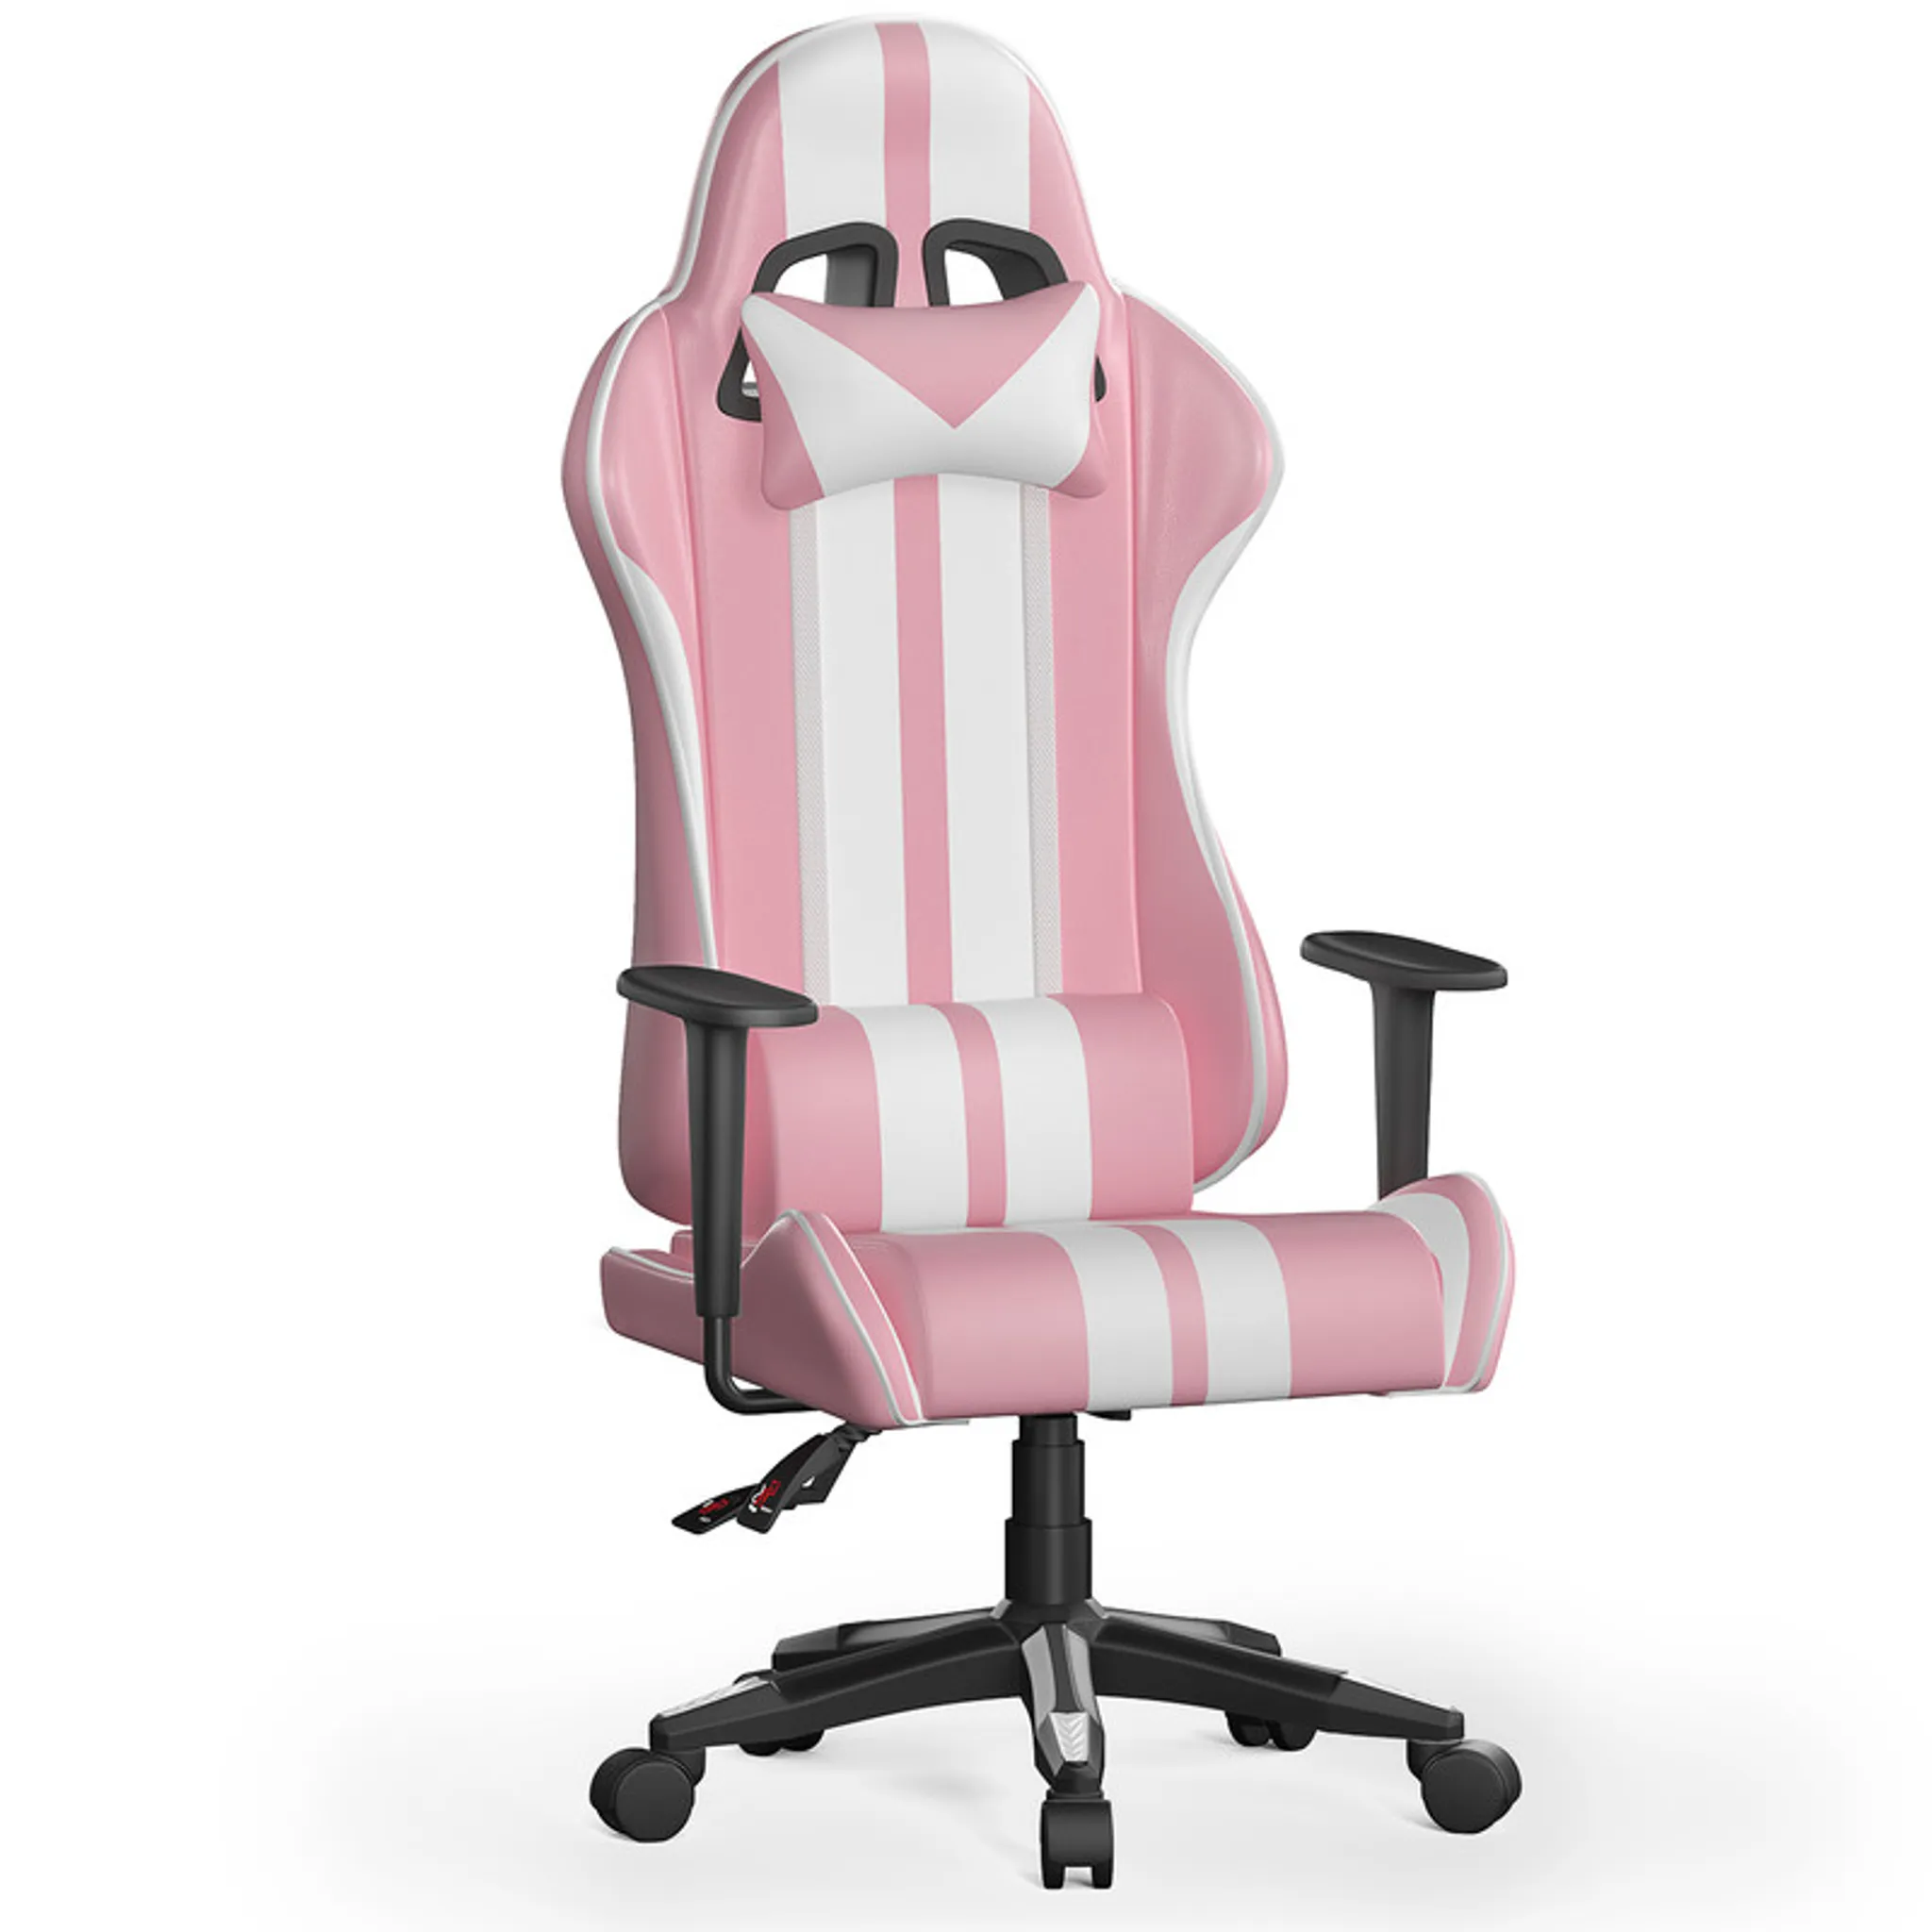 BIGZZIA Gaming Stuhl Ergonomisch Computerstuhl - Gamer Stühle mit  Lendenkissen + Kopfstütze Höhenverstellbar Gaming Chair Bürostuhl für